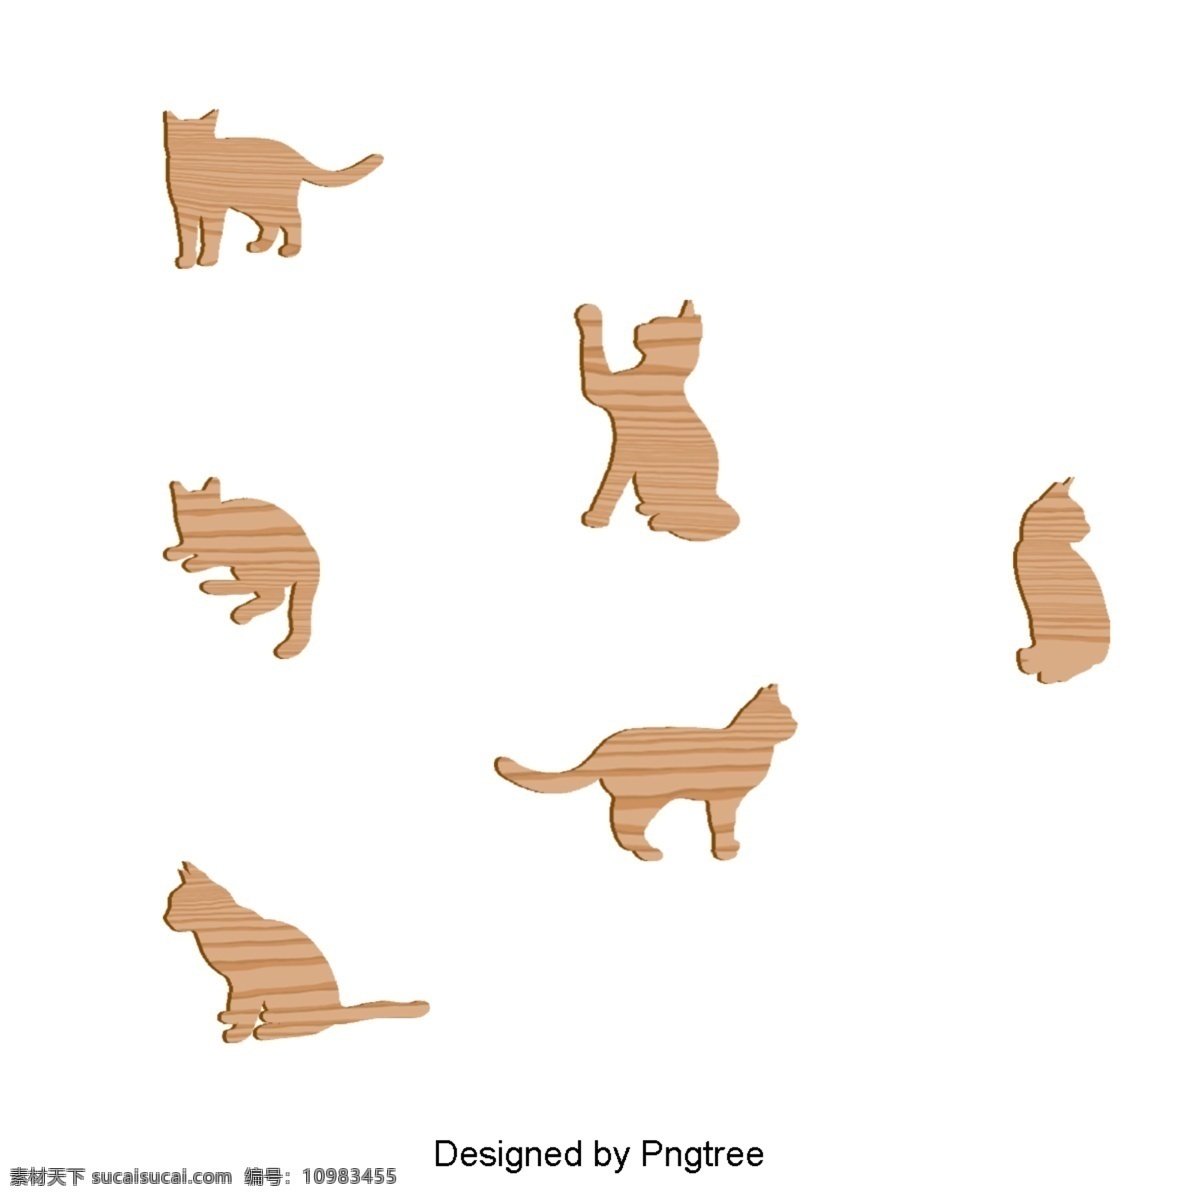 漂亮 的卡 通 可爱 平板 动物 拼图 美感 卡通 扁平 玩具 小猫 小狗